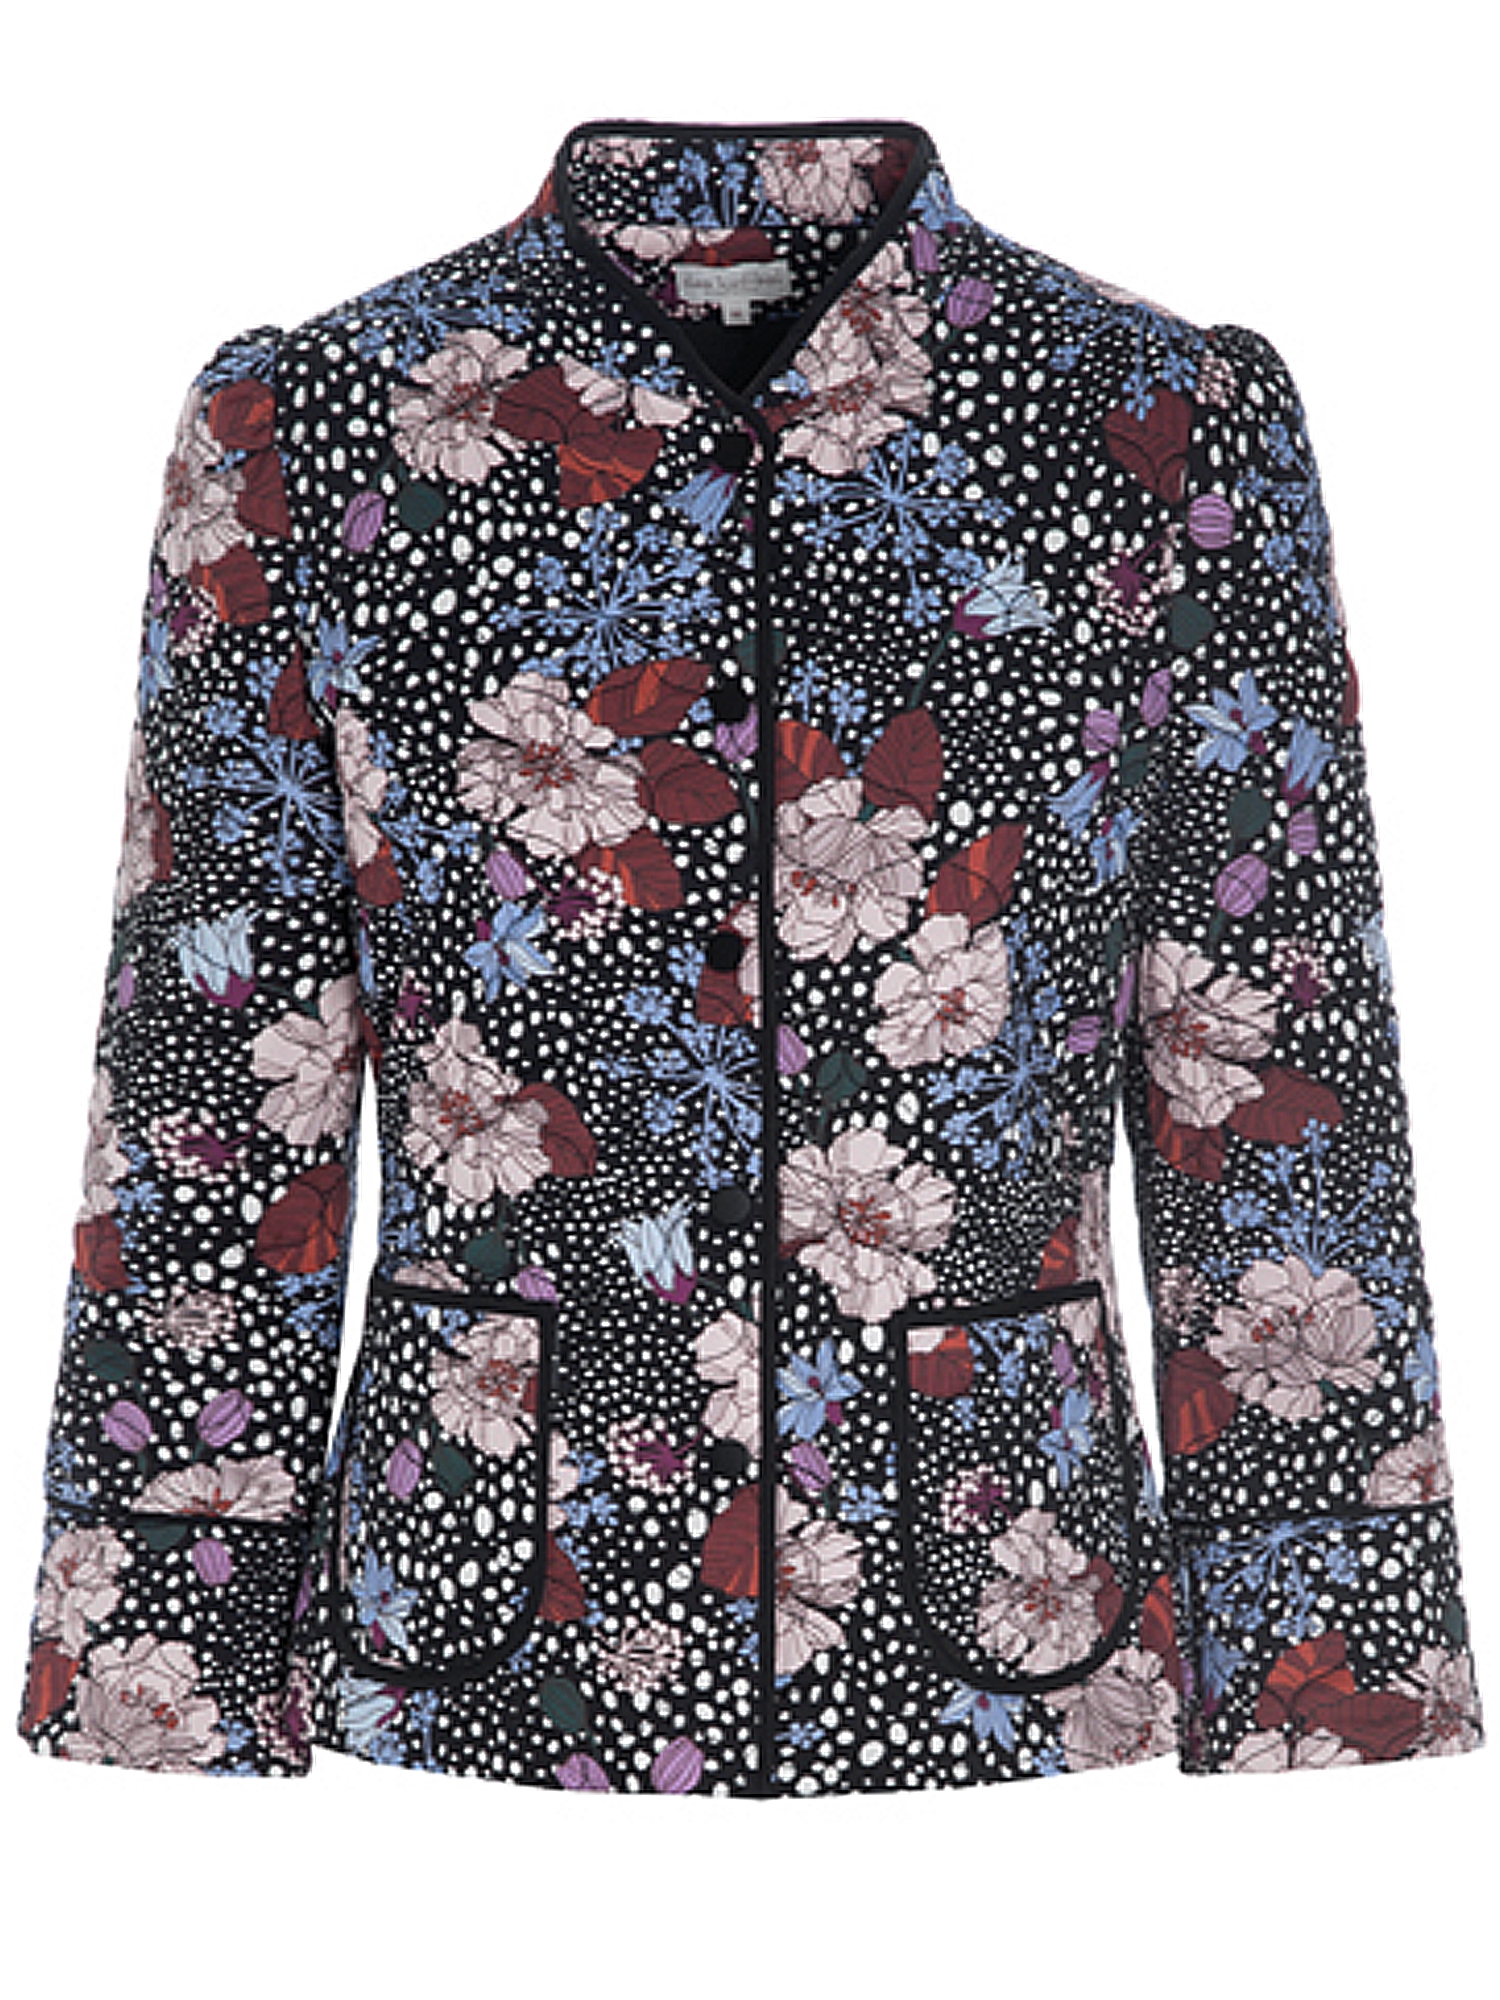 Rosy Jacket, | Dea - Shop